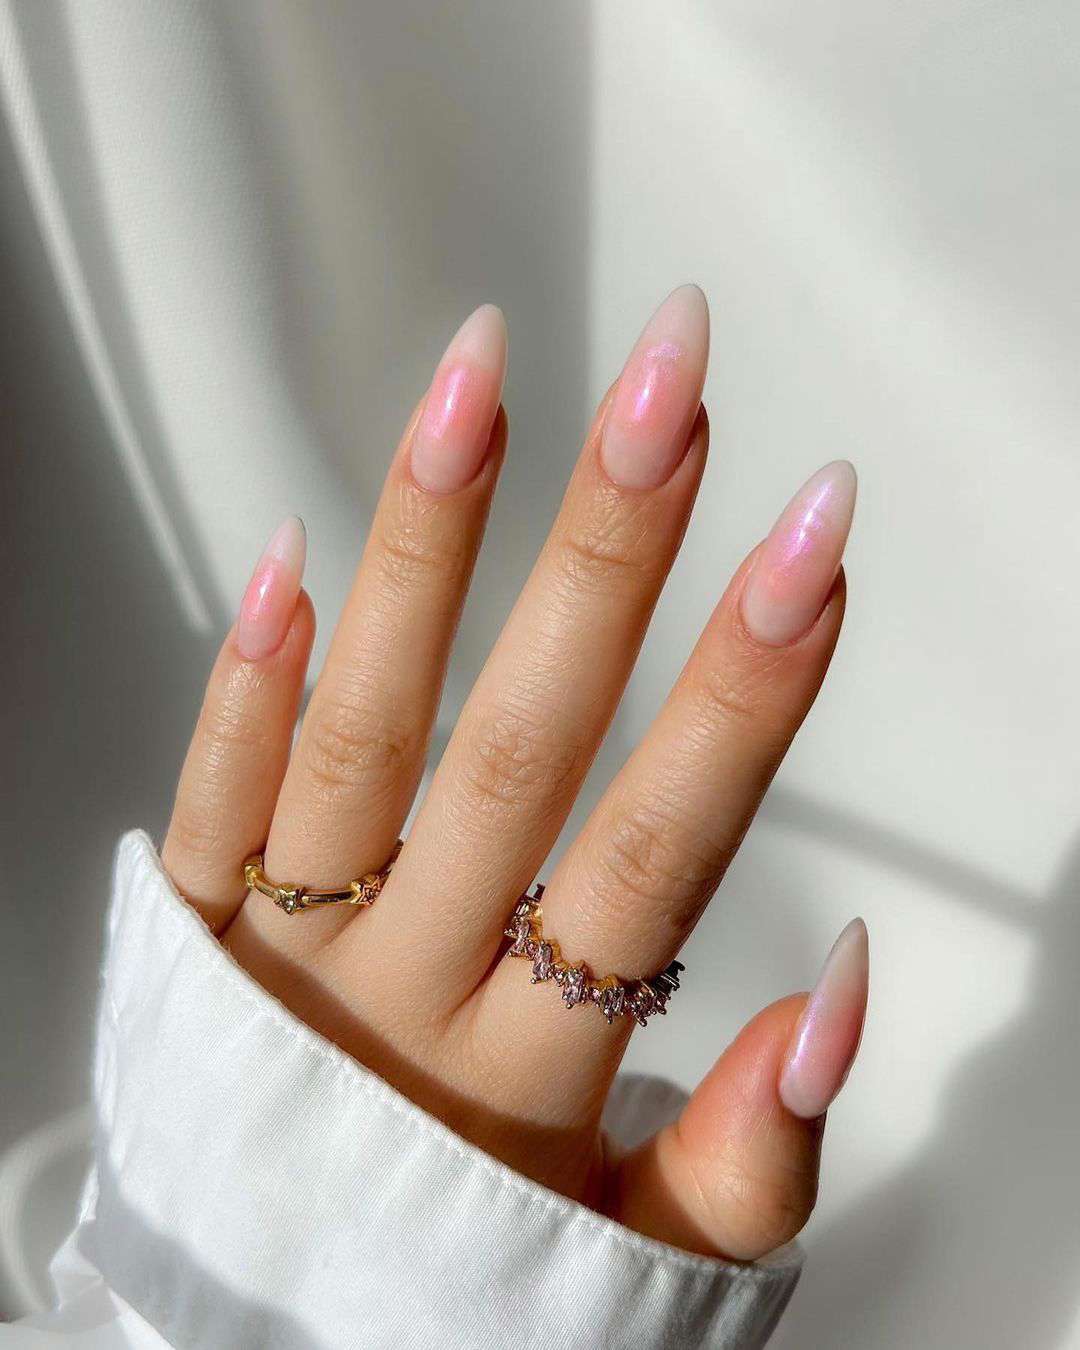 Uñas perladas para verano: blush nails